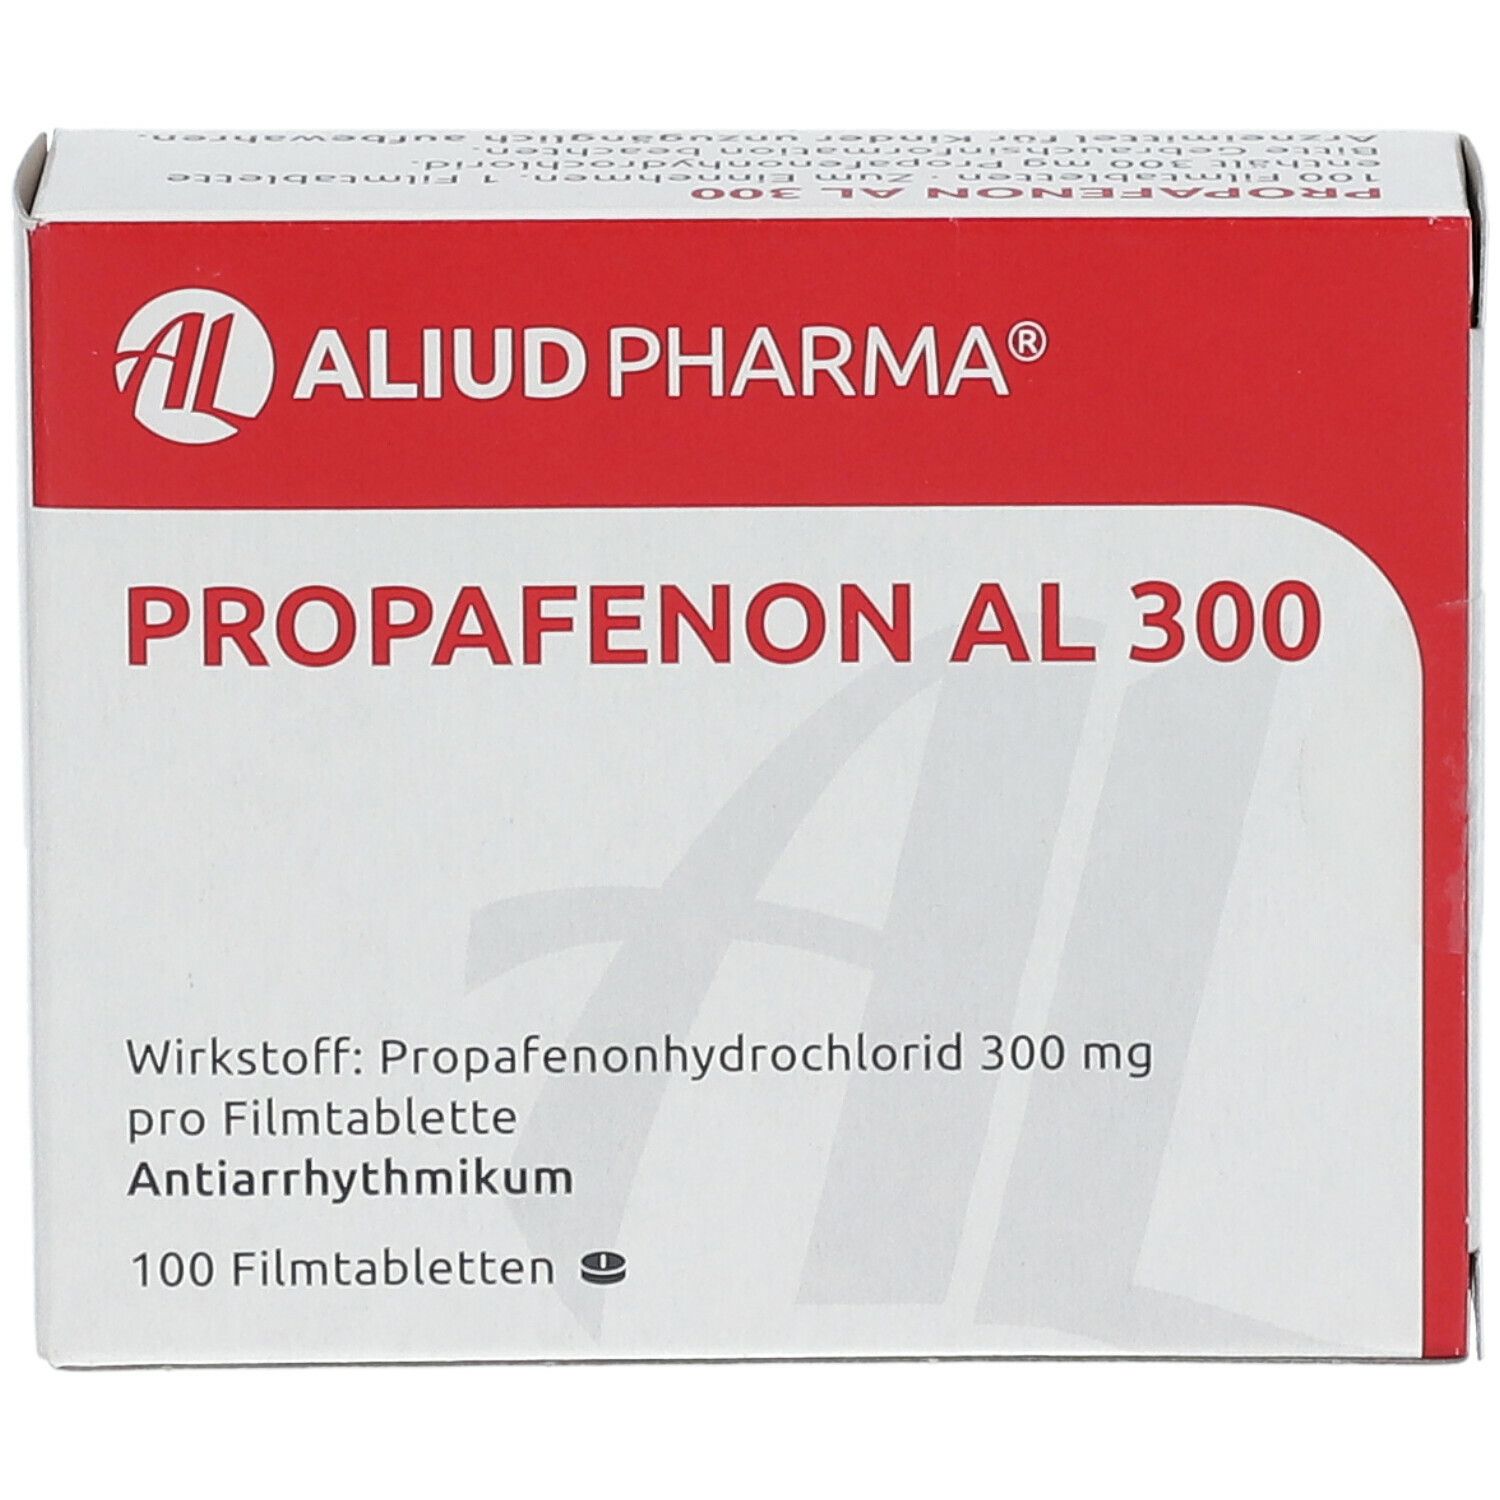 Propafenon AL 300